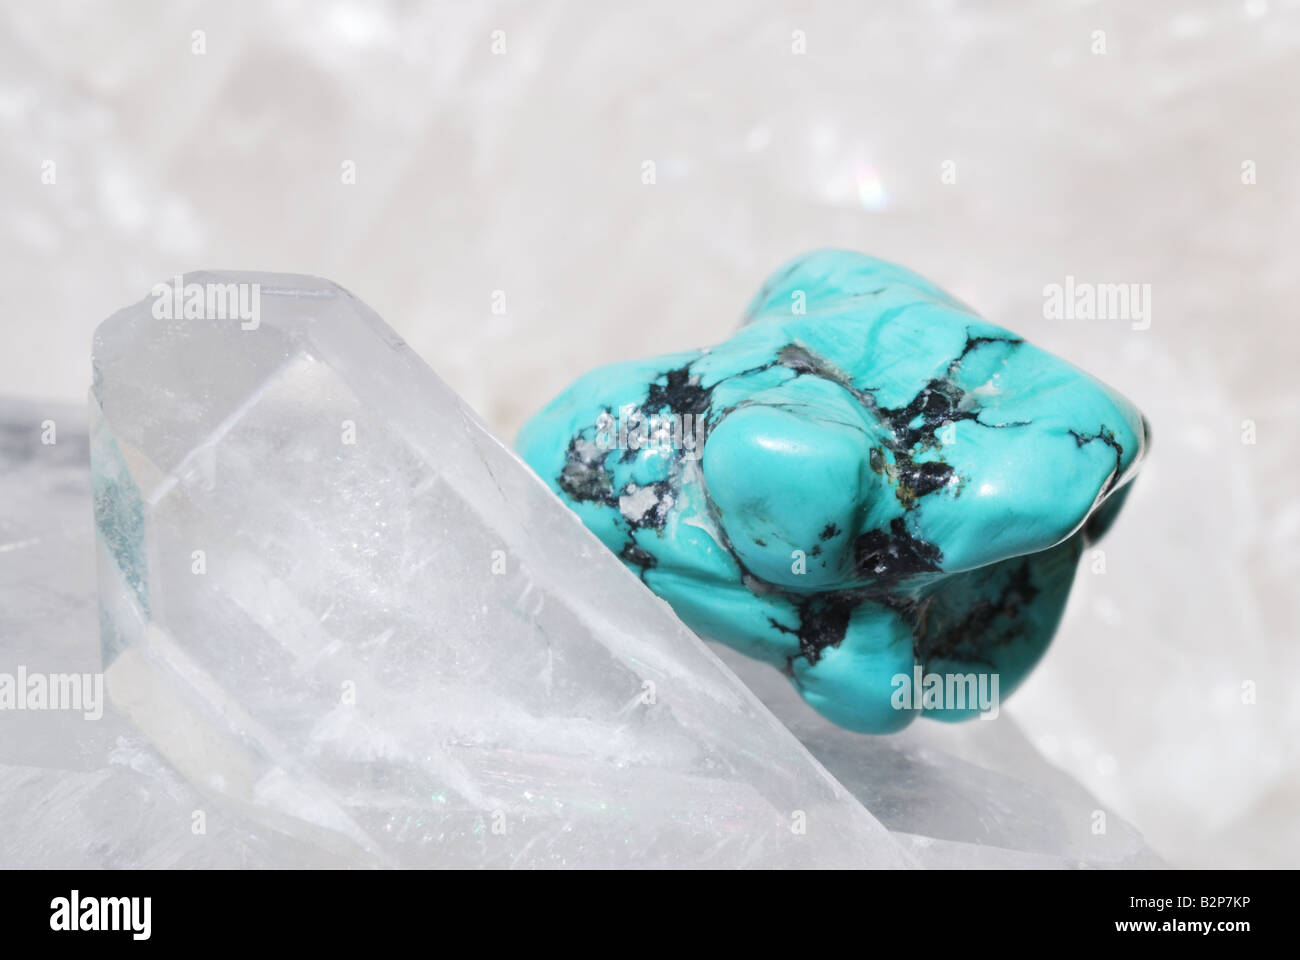 Turquoise gem energized on druze of quartz crystals Stock Photo